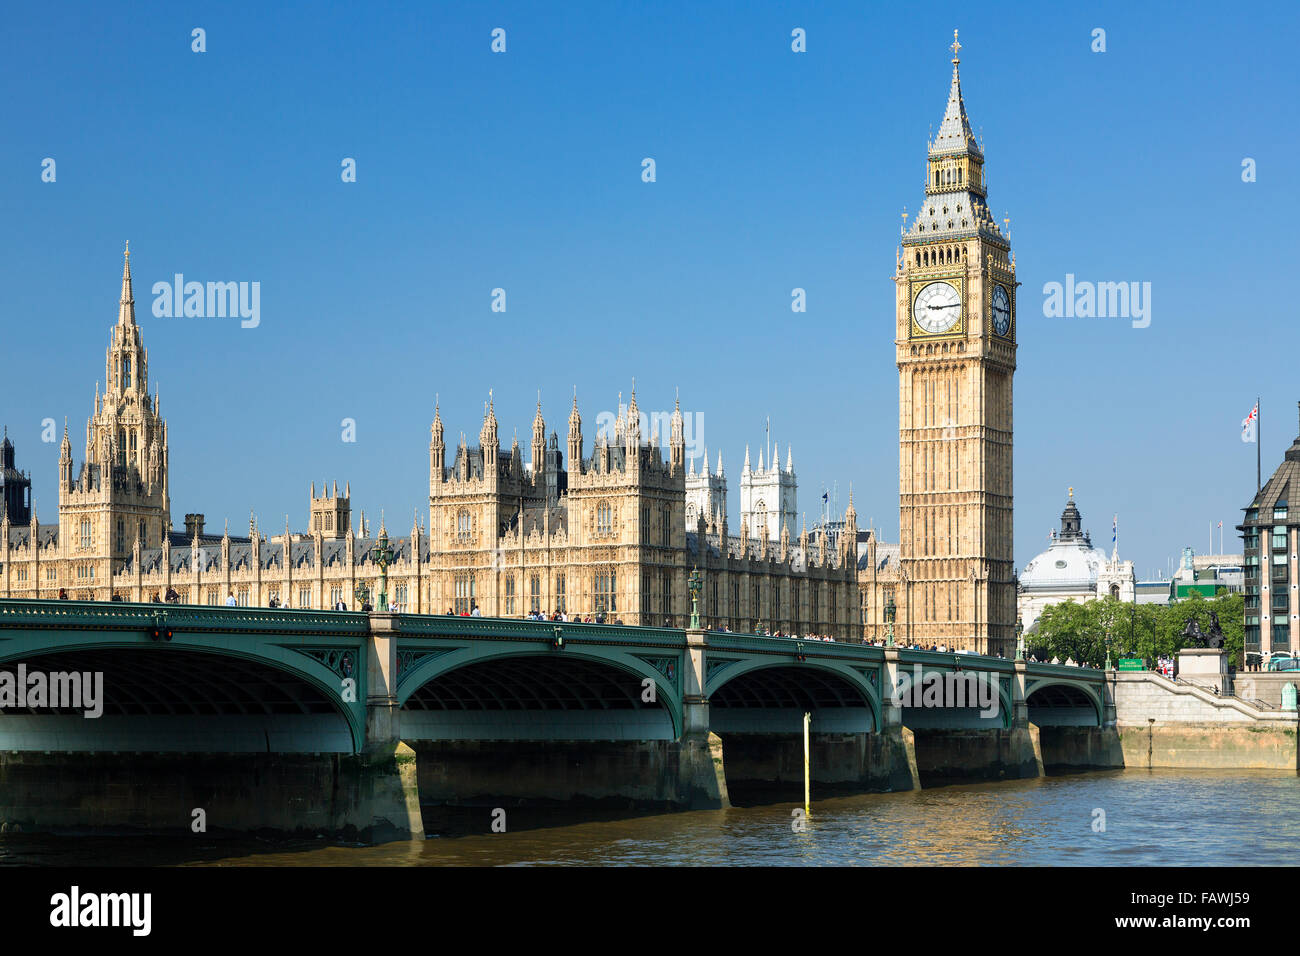 Londres, Big Ben Clock Tower et le pont de Westminster Banque D'Images